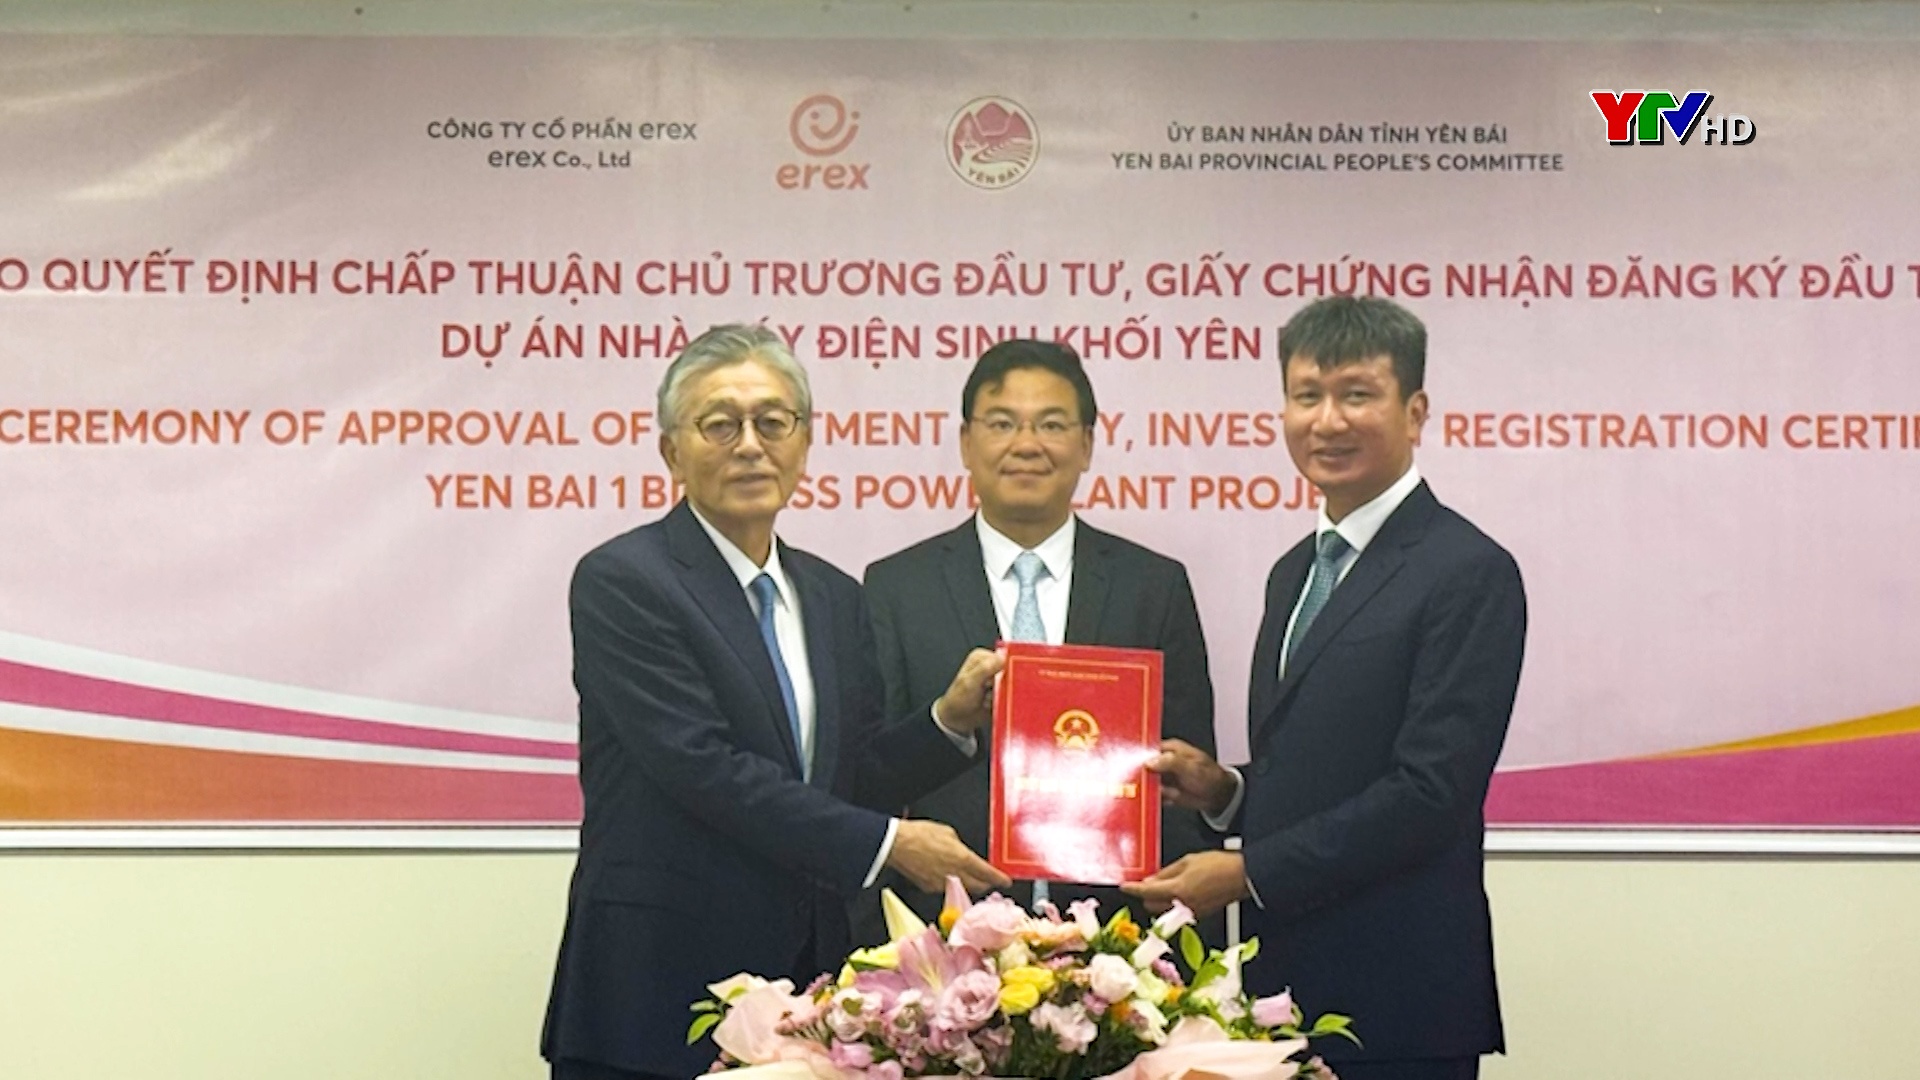 Tại Nhật Bản: Đồng chí Chủ tịch UBND tỉnh Trần Huy Tuấn trao Quyết định chấp thuận chủ trương đầu tư Dự án nhà máy điện sinh khối Yên Bái 1